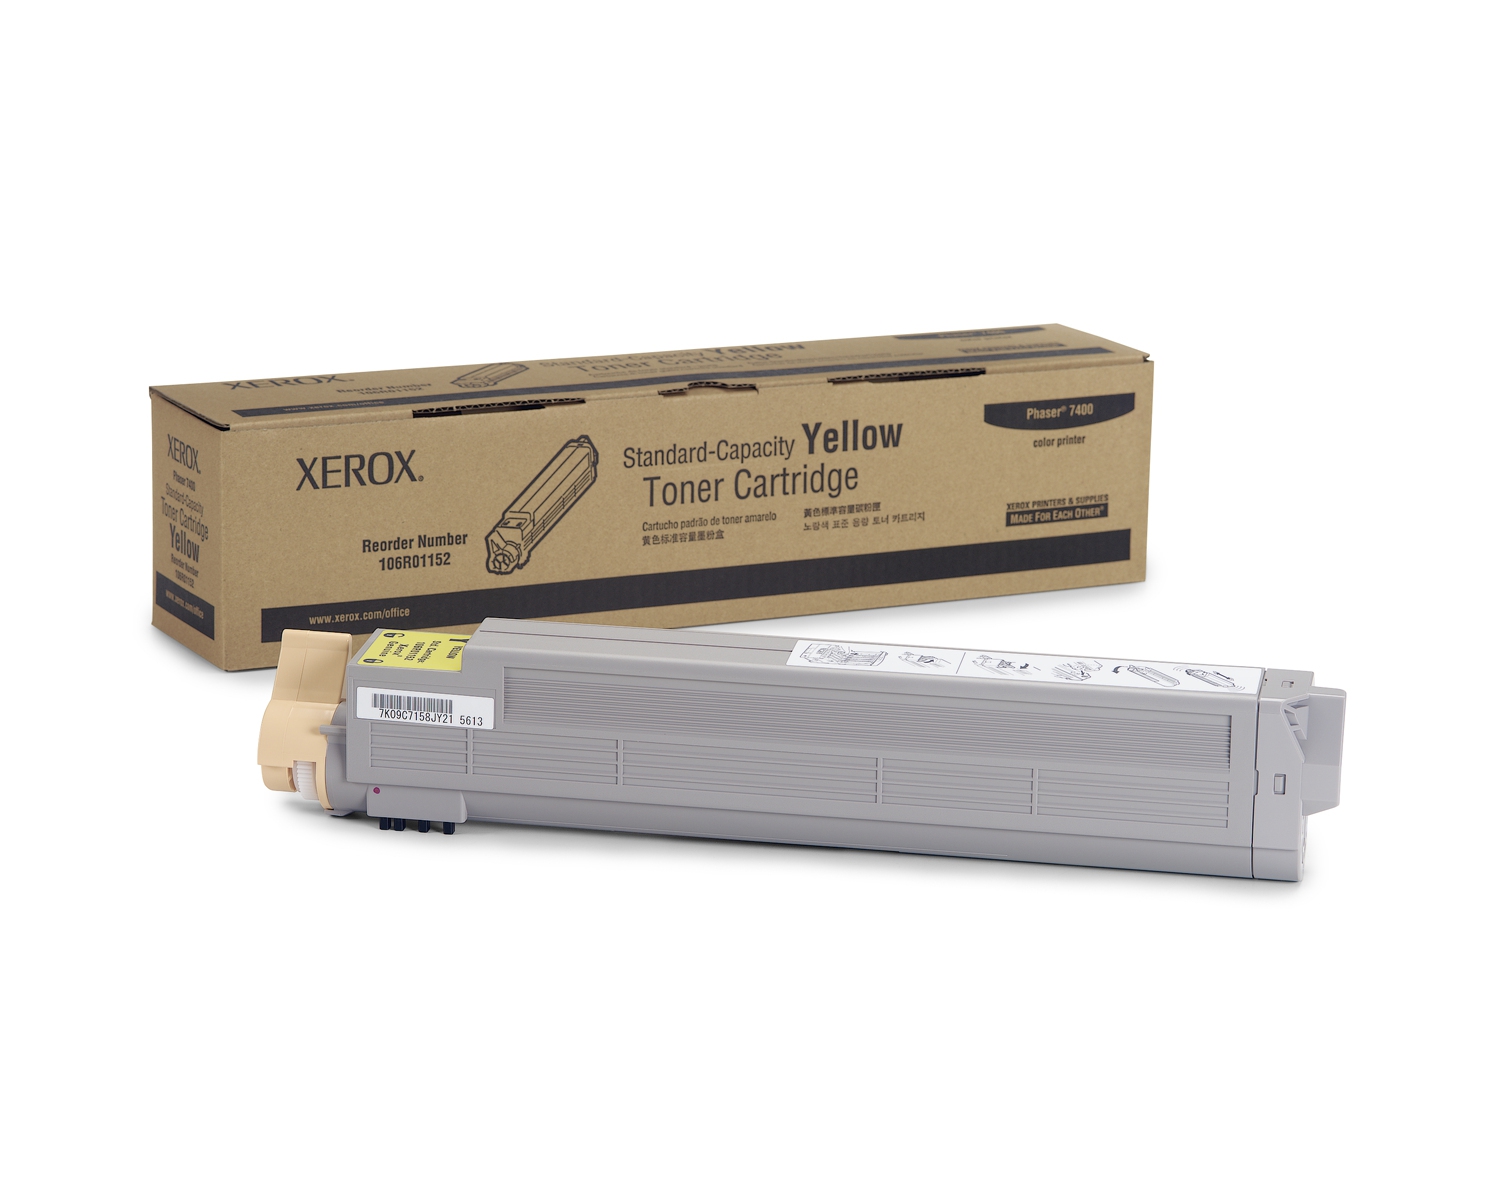 Xerox Toner Cartridge Yellow 7.500vel 1 Pack